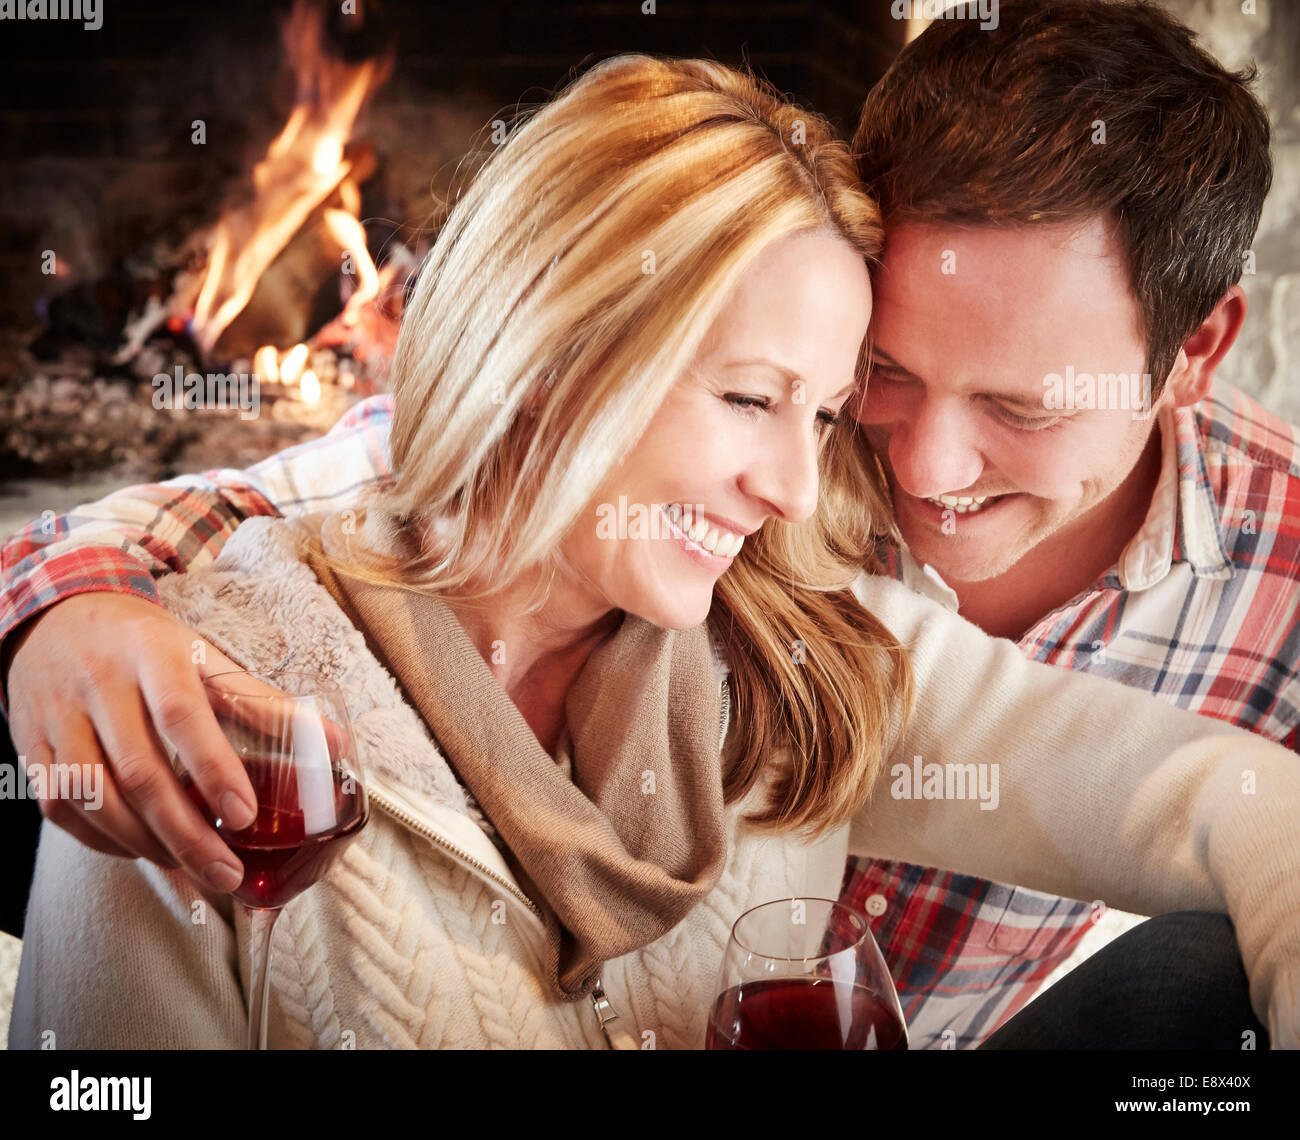 Couple enjoying drinks together Stock Photo